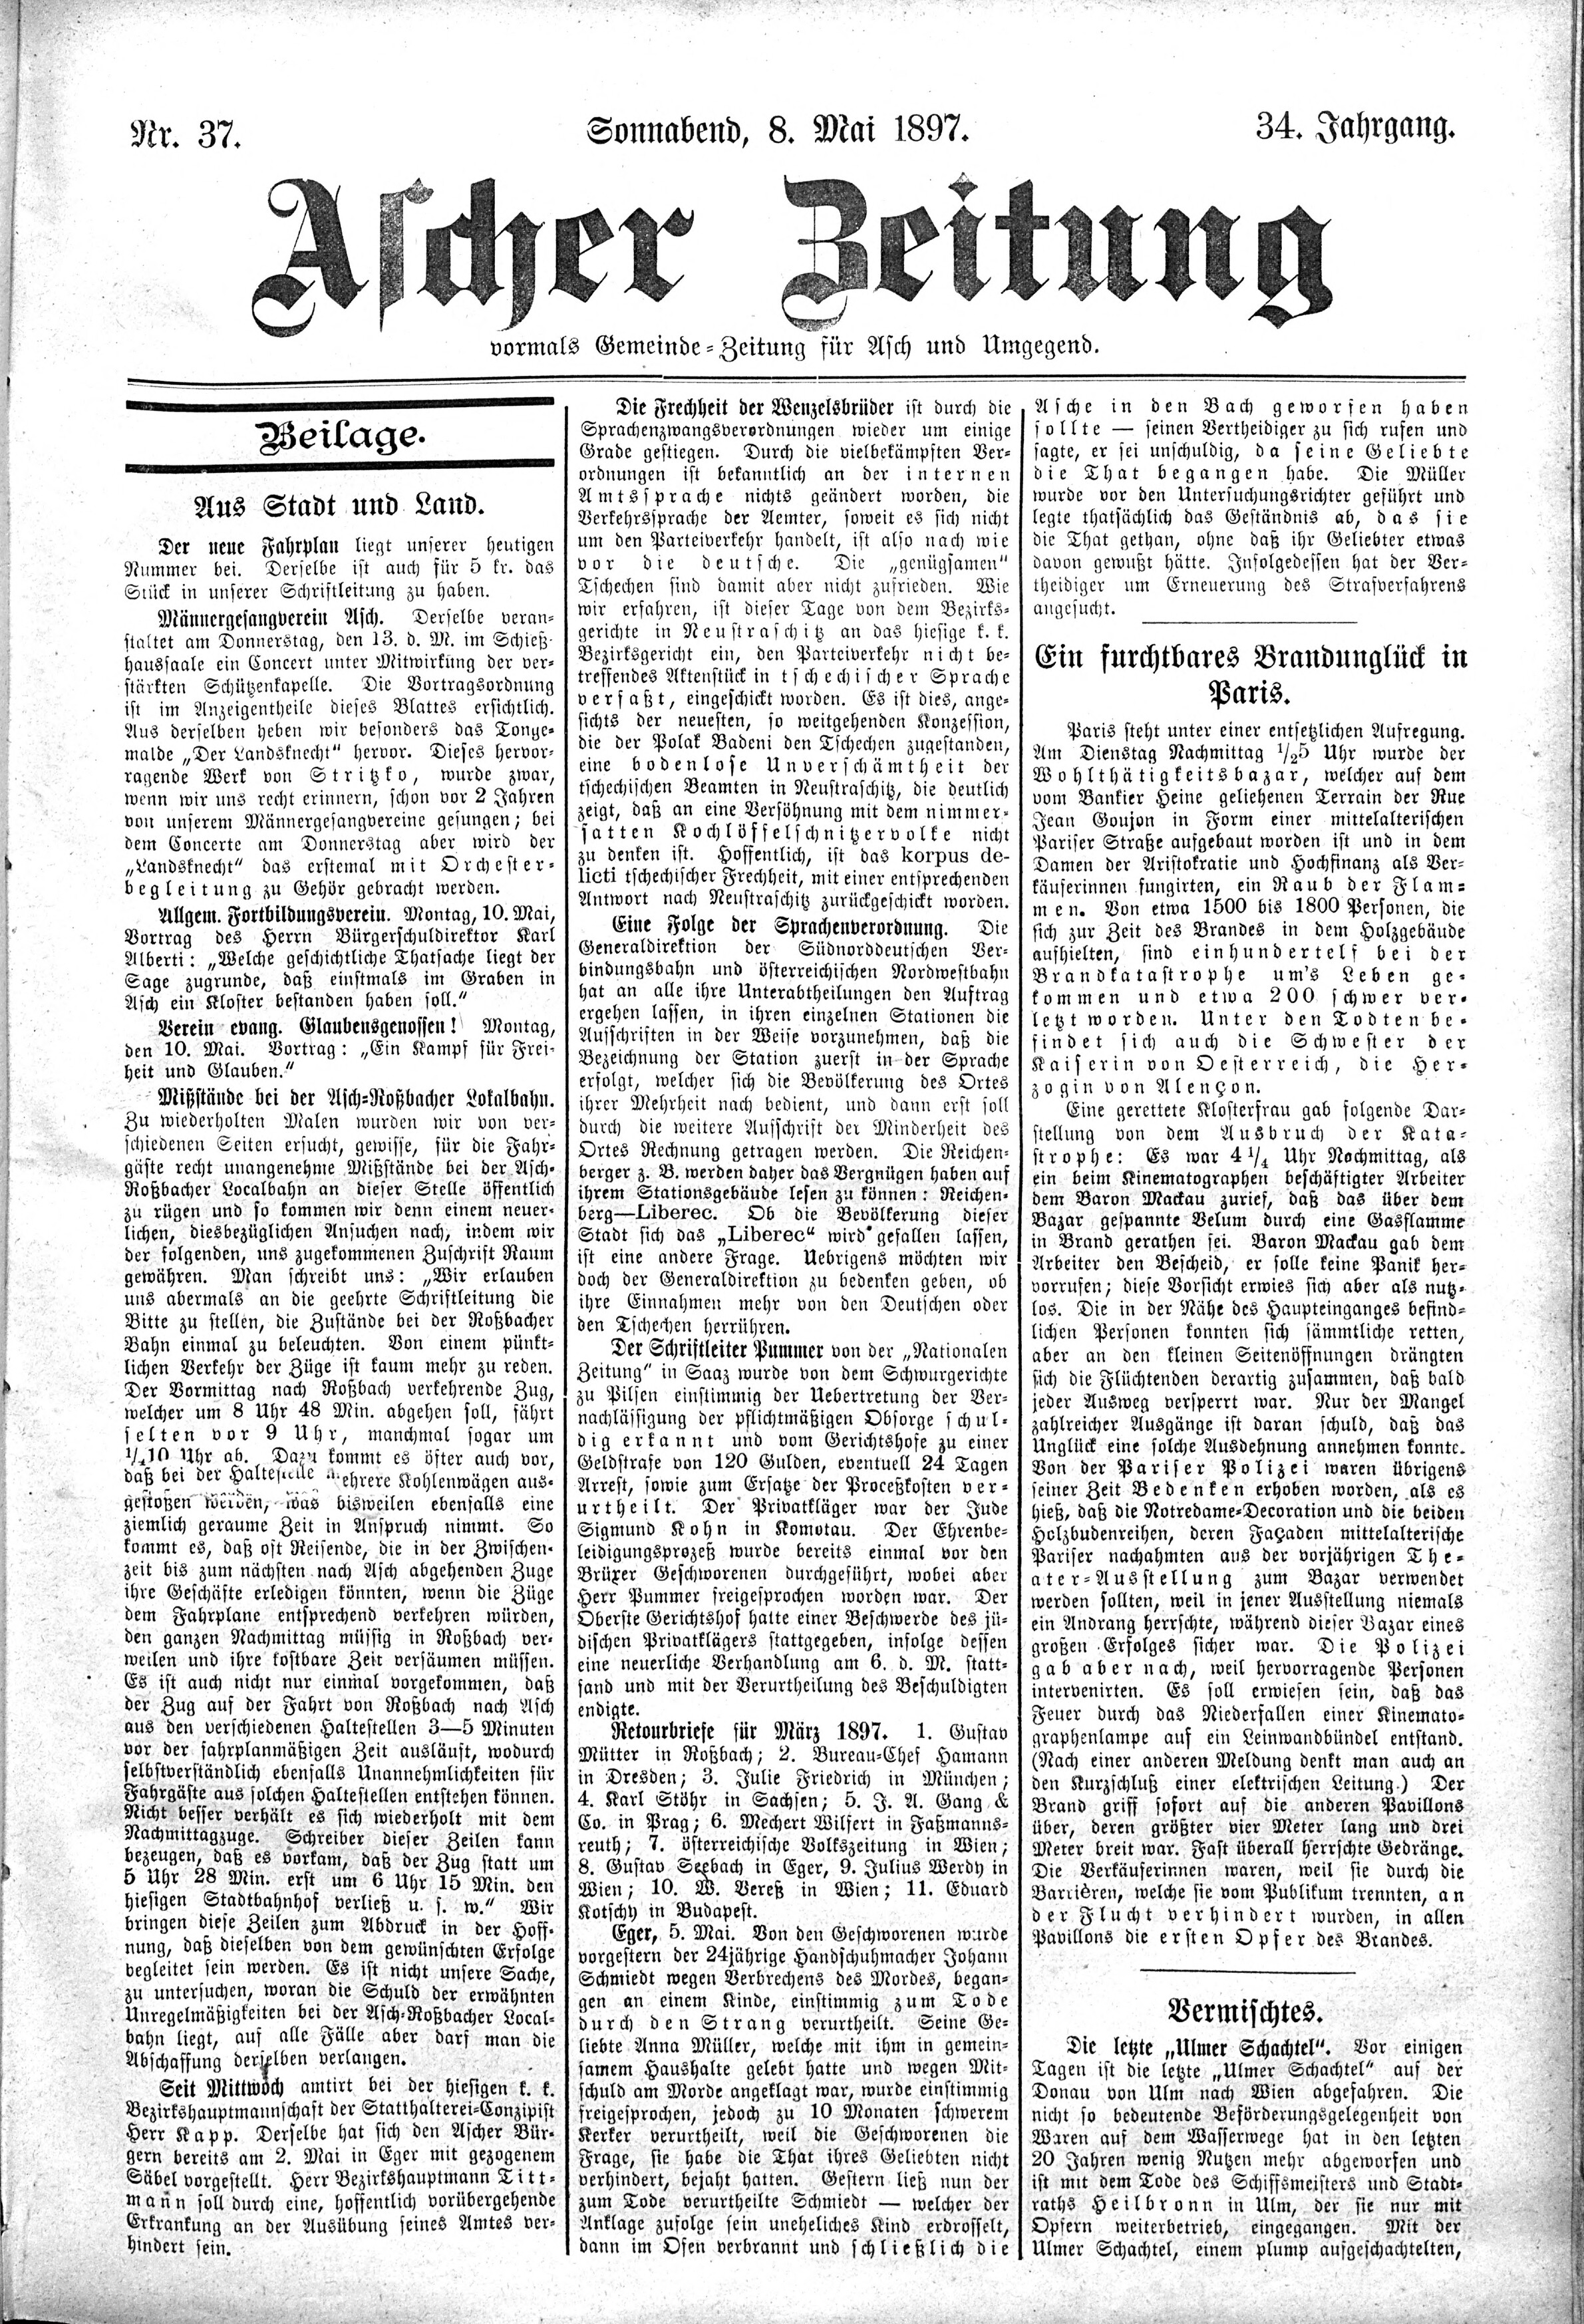 3. soap-ch_knihovna_ascher-zeitung-1897-05-08-n37_1685